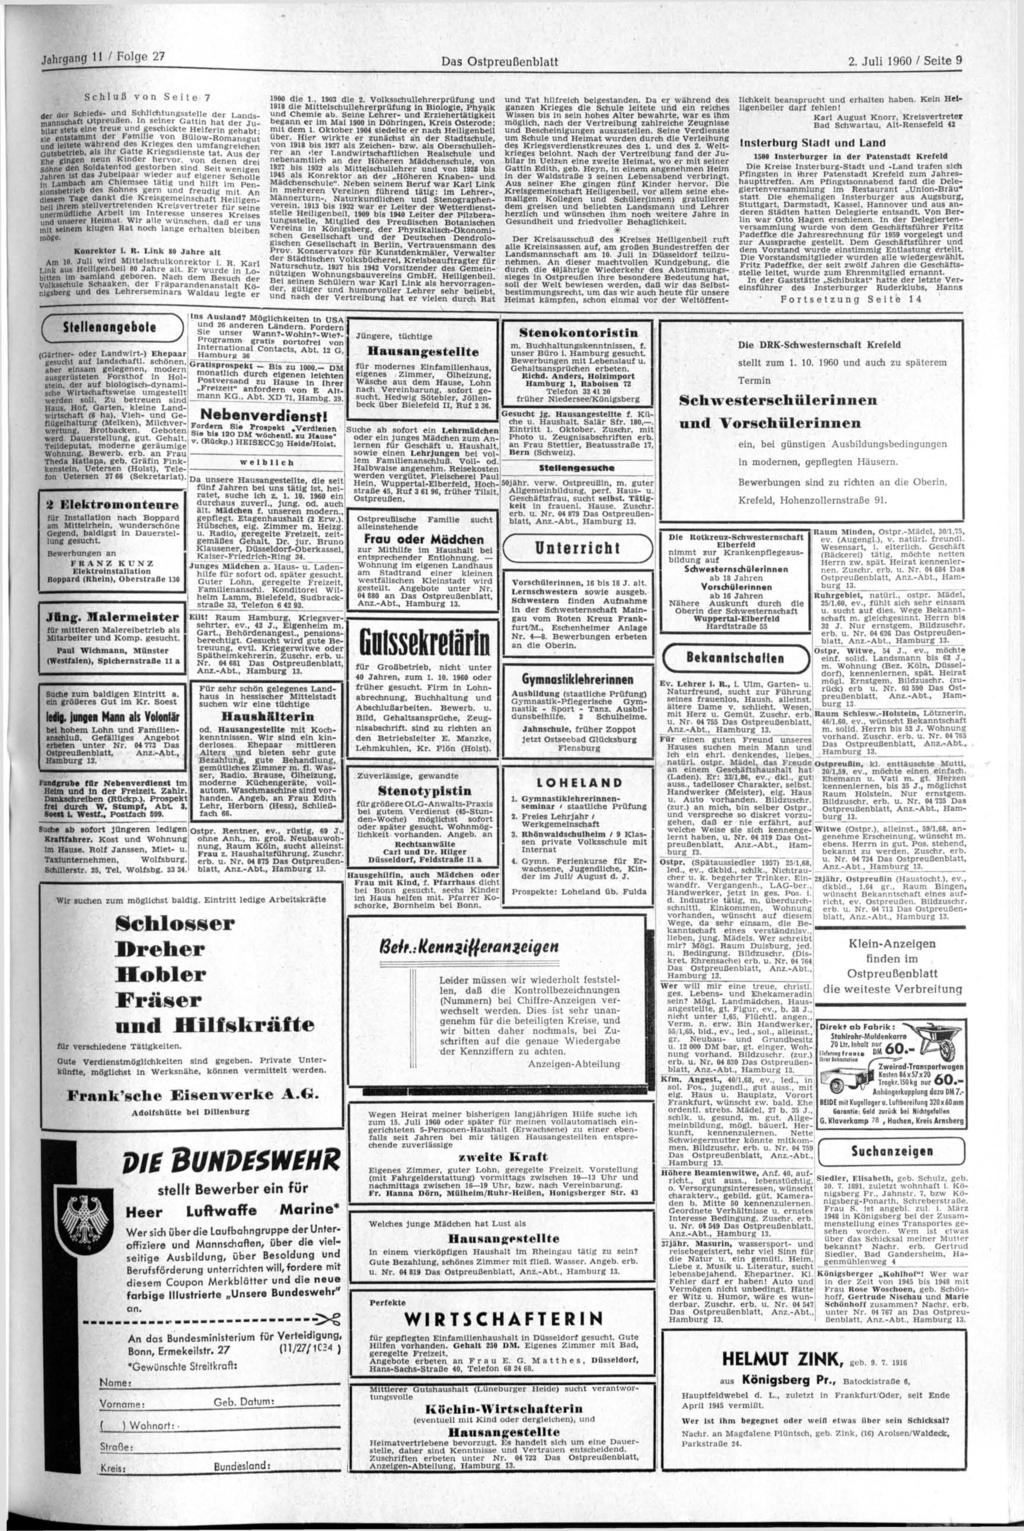 Jahrgang 11 / Folge 27 Das Ostpreußenblatt 2. Juli 1960 / Seite 9 Schluß von Seite 7 der der Schieds- und Schlichtungsstelle der Landsmannschaft Otpreußen.